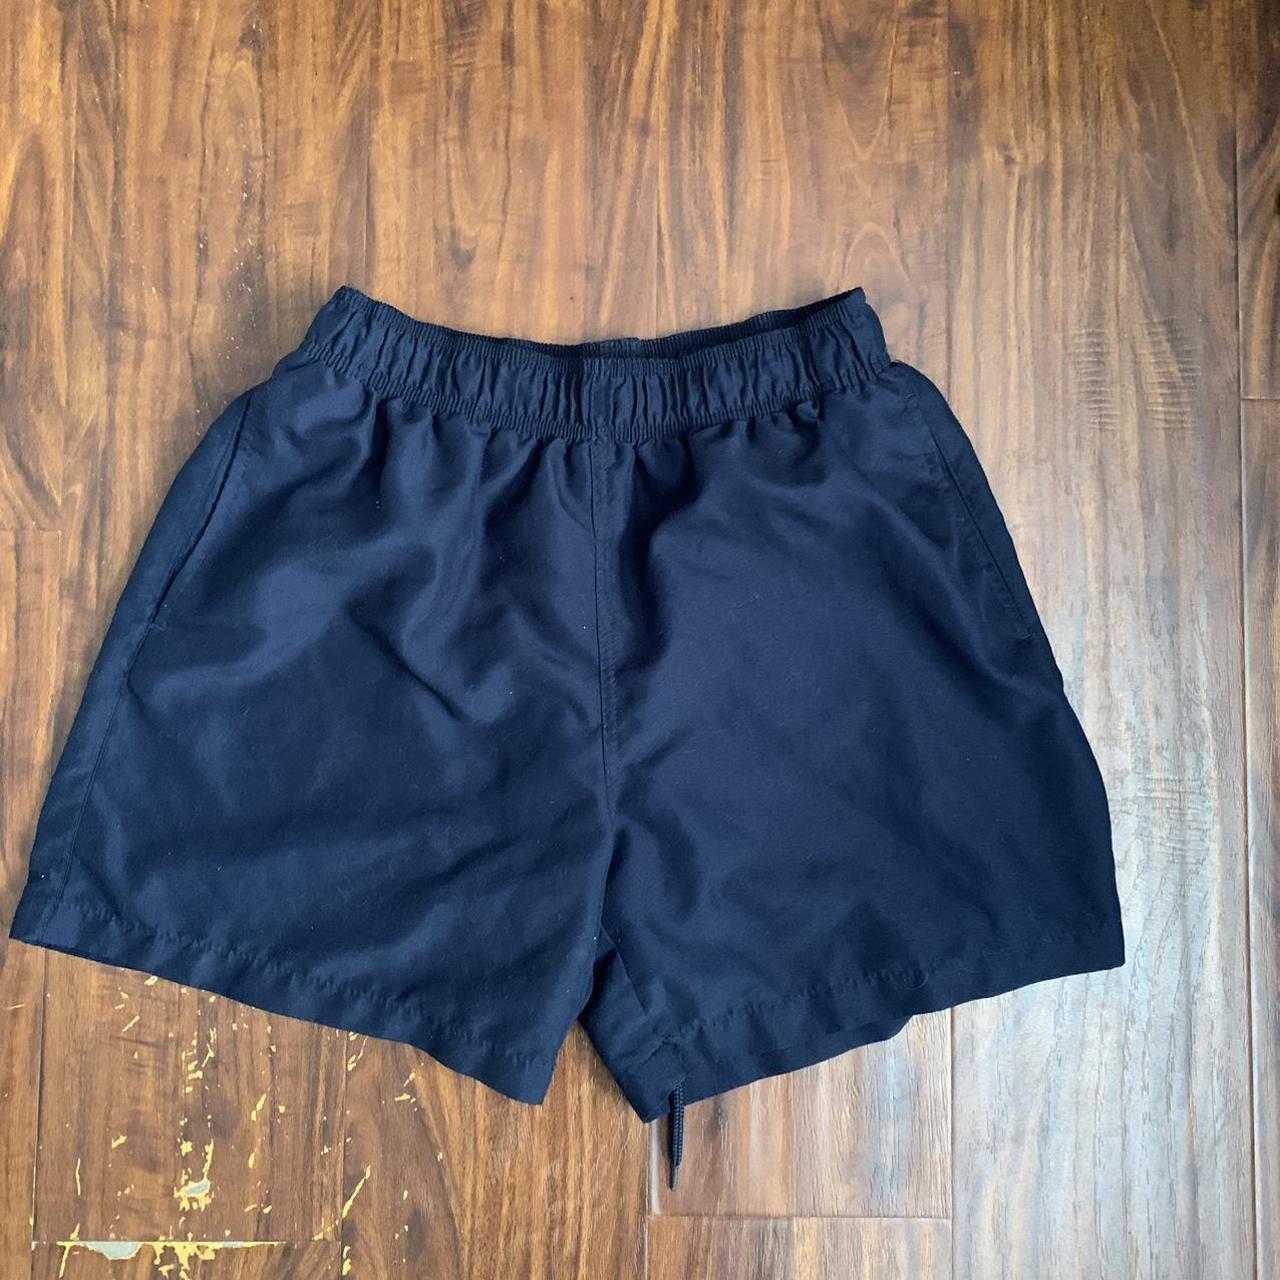 Men's Navy Swim-briefs-shorts